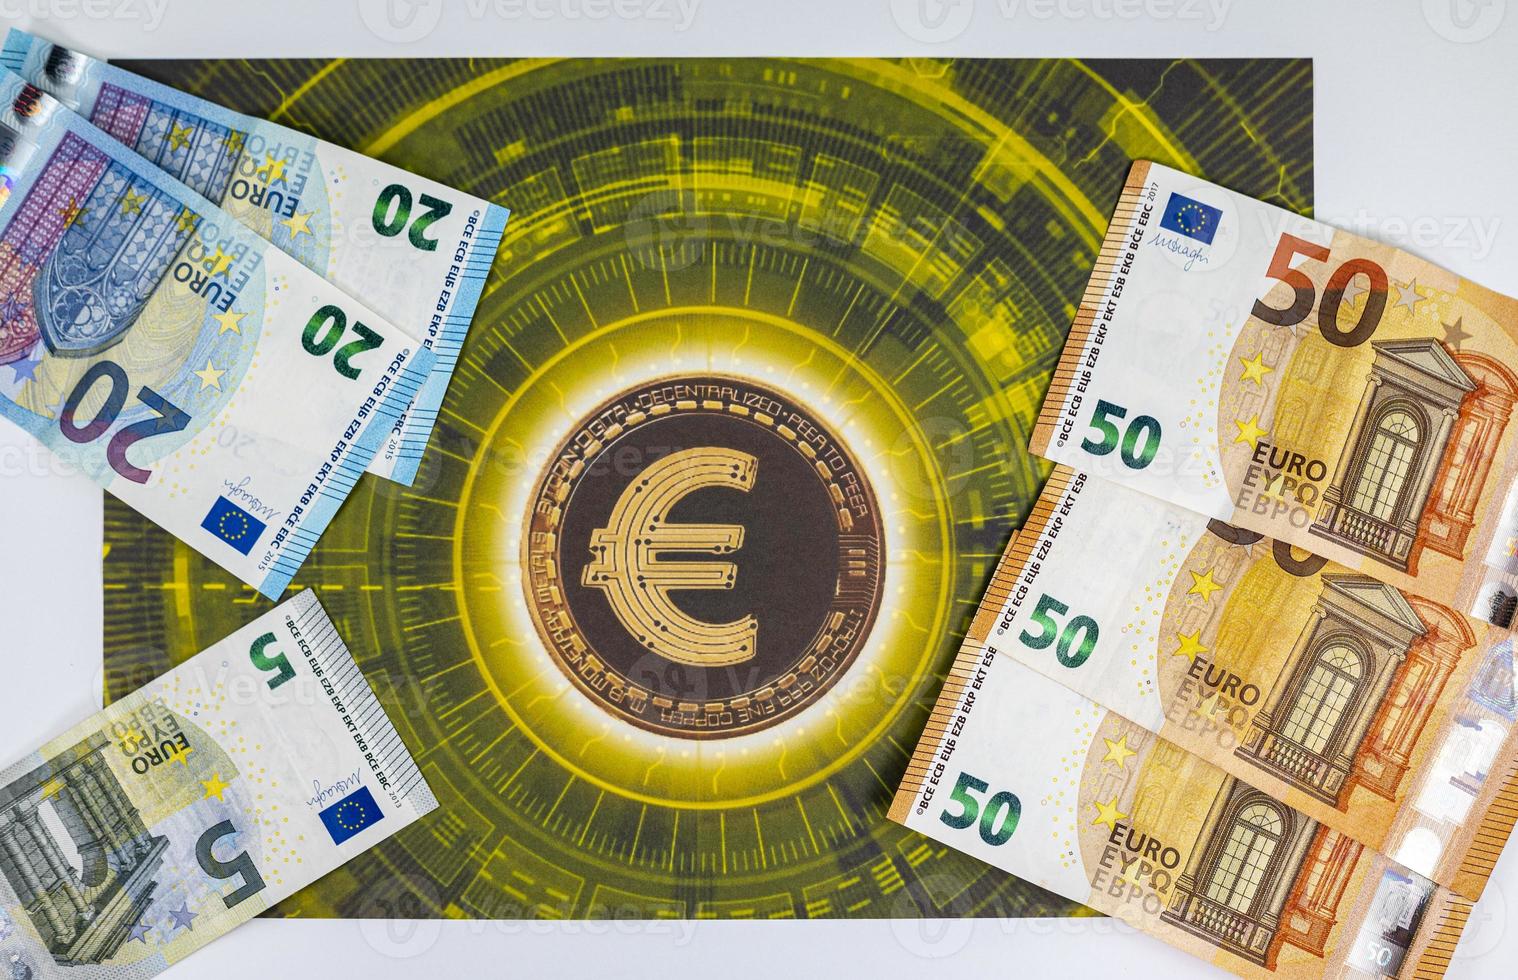 50 20 5 banconote in euro con simbolo dell'euro foto